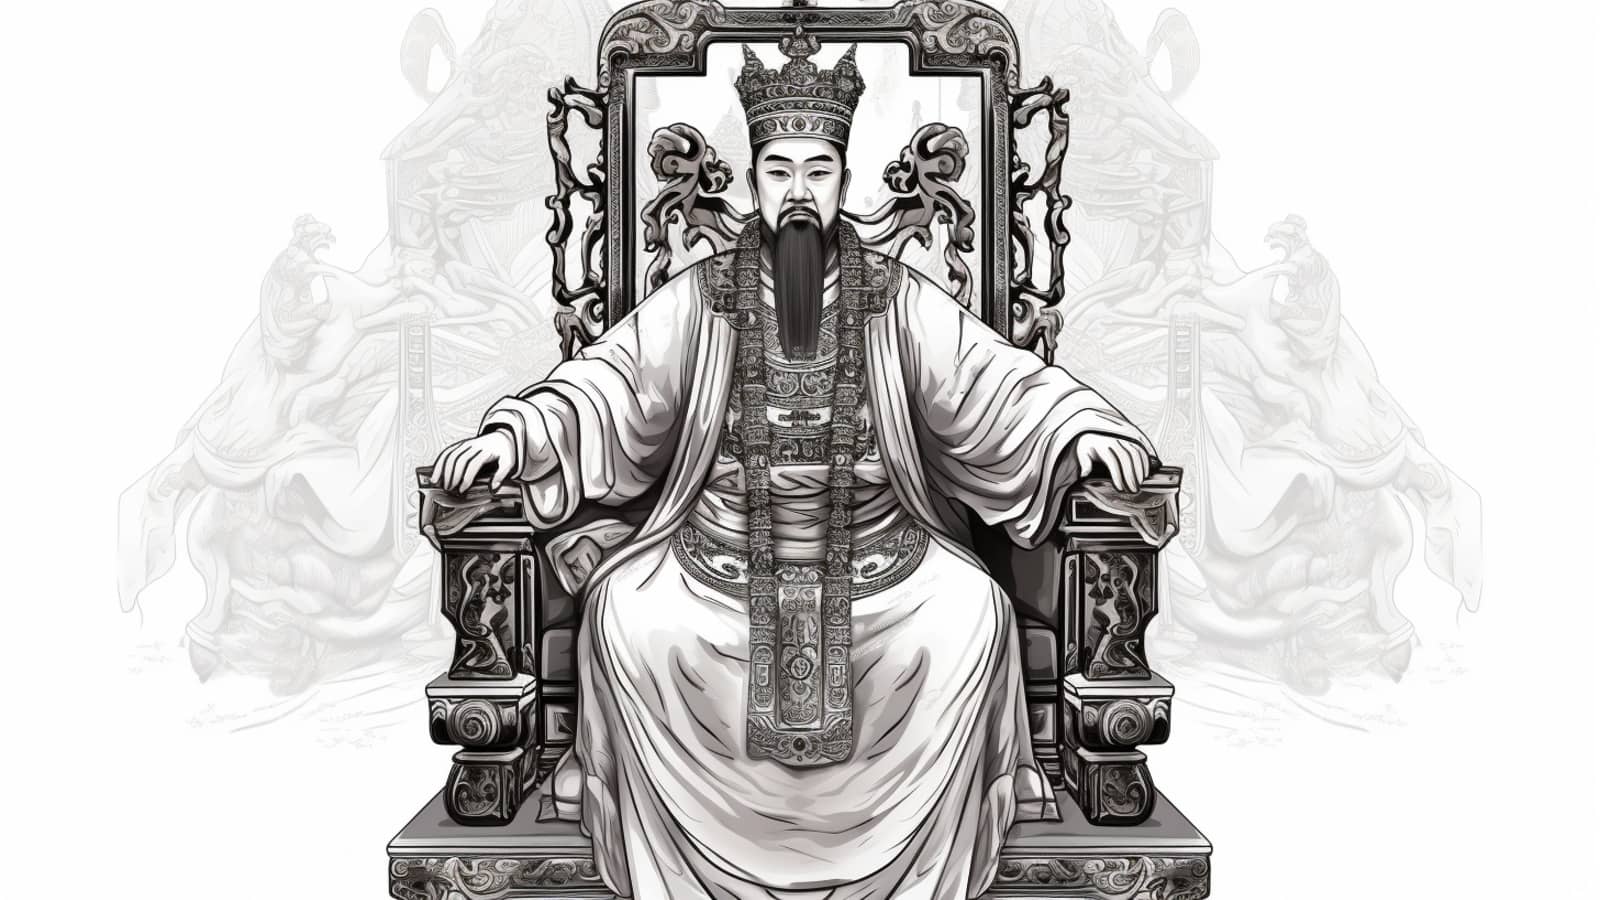 rycina chińskiego władcy zhou